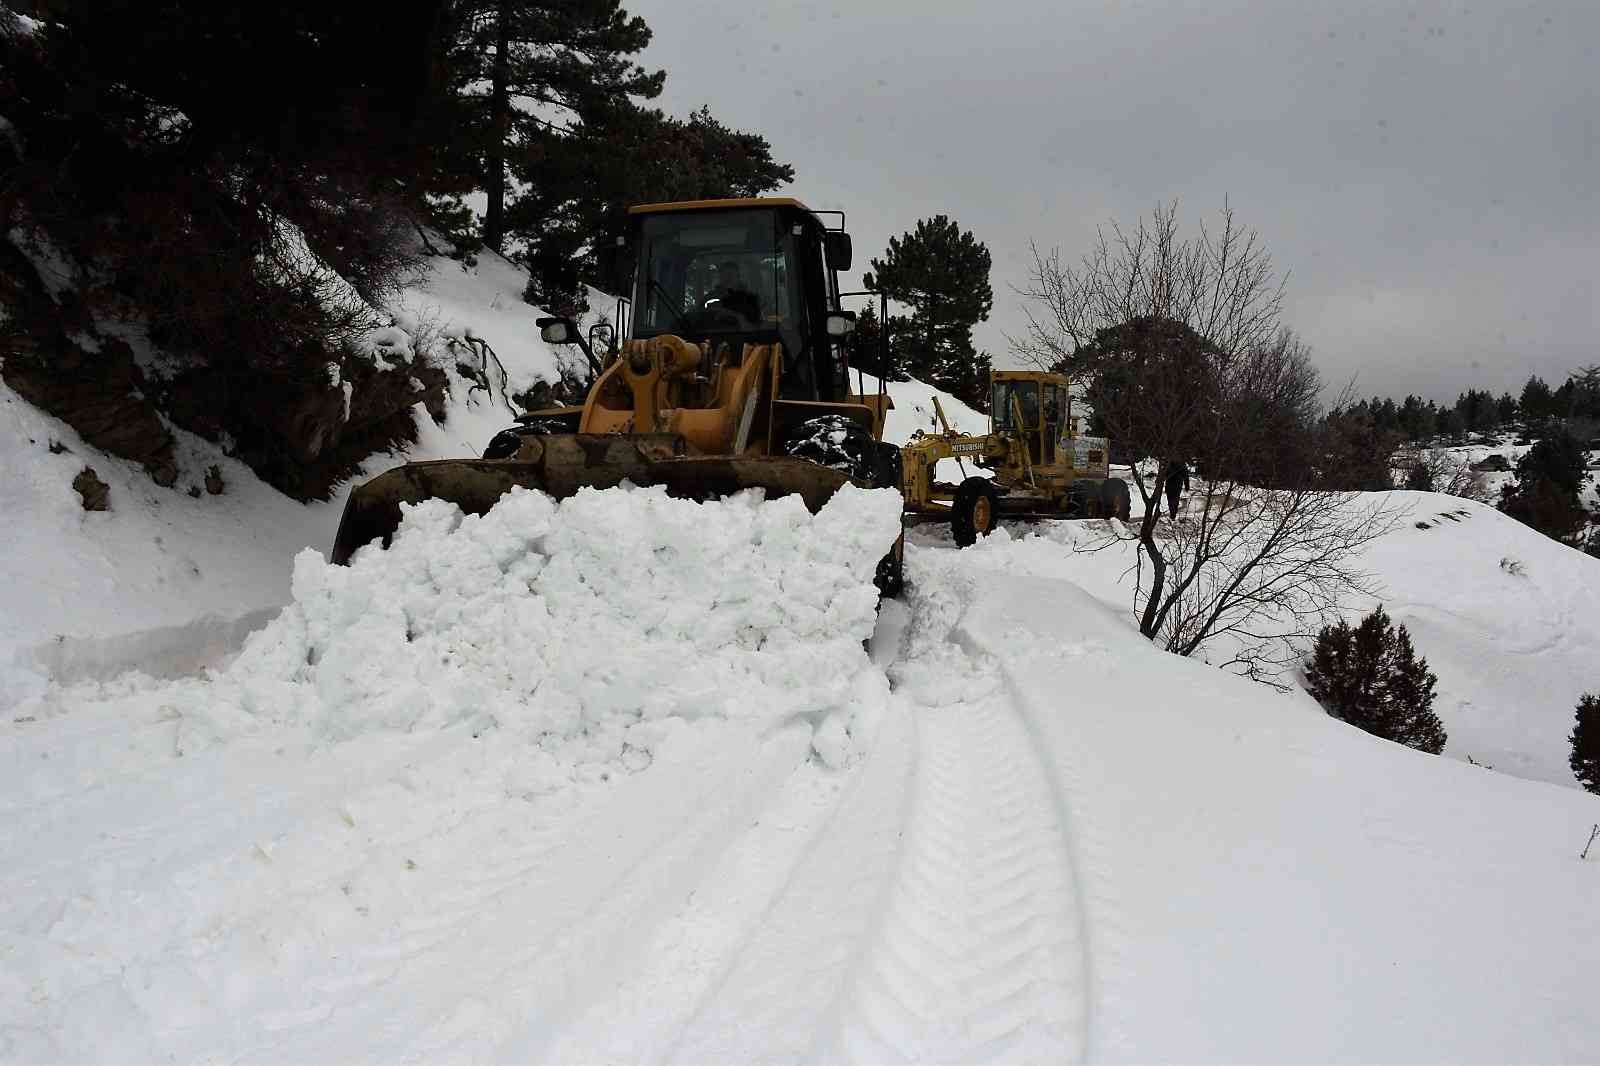 Antalya’nın yüksek kesimlerinde karla mücadele çalışması devam ediyor